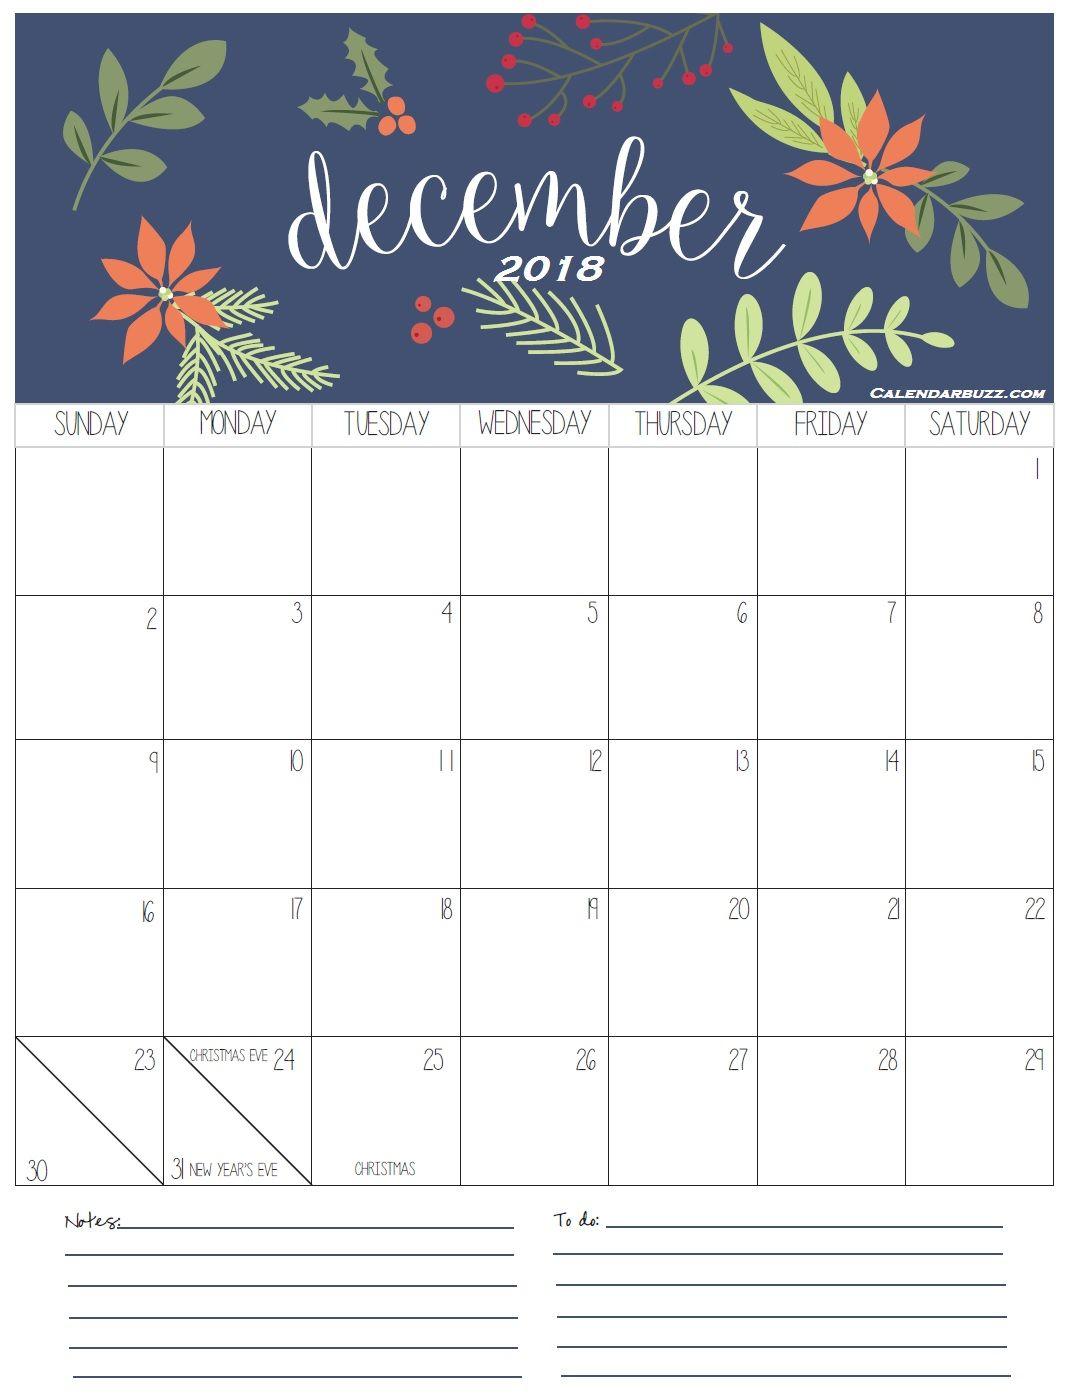 December 2018 Calendar. wallpaper. December, Planners